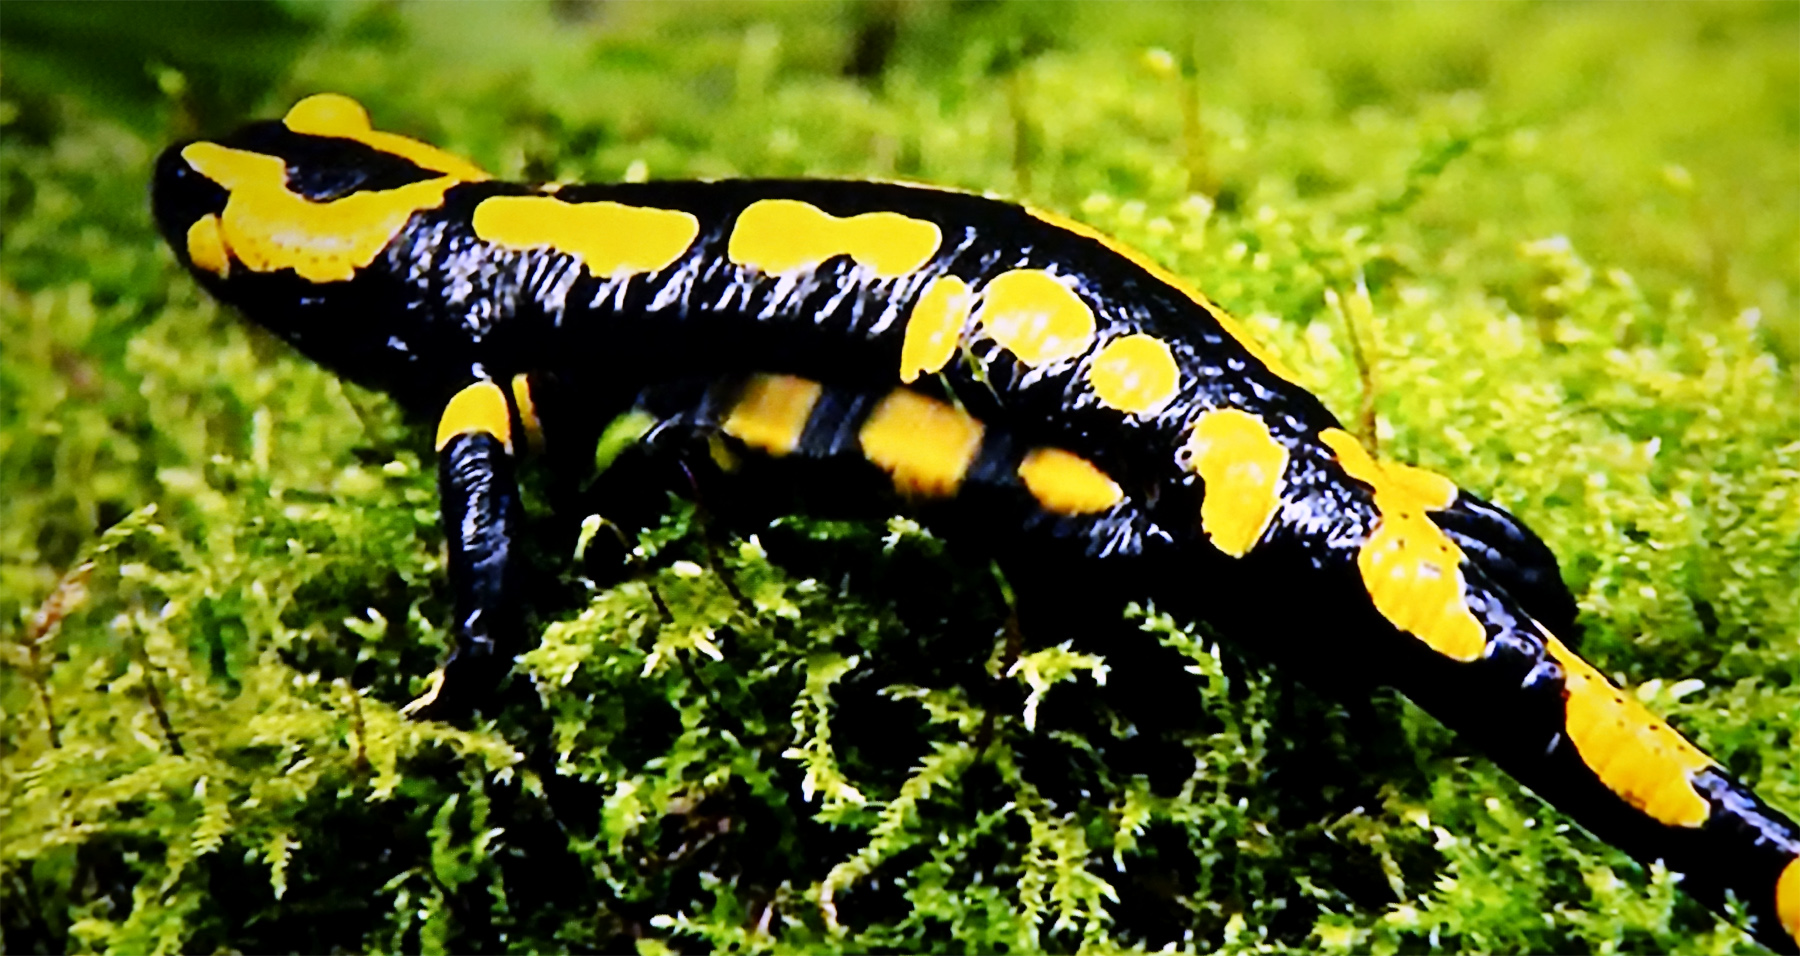 salamander im wengleinpark nürnberger land eschenbach